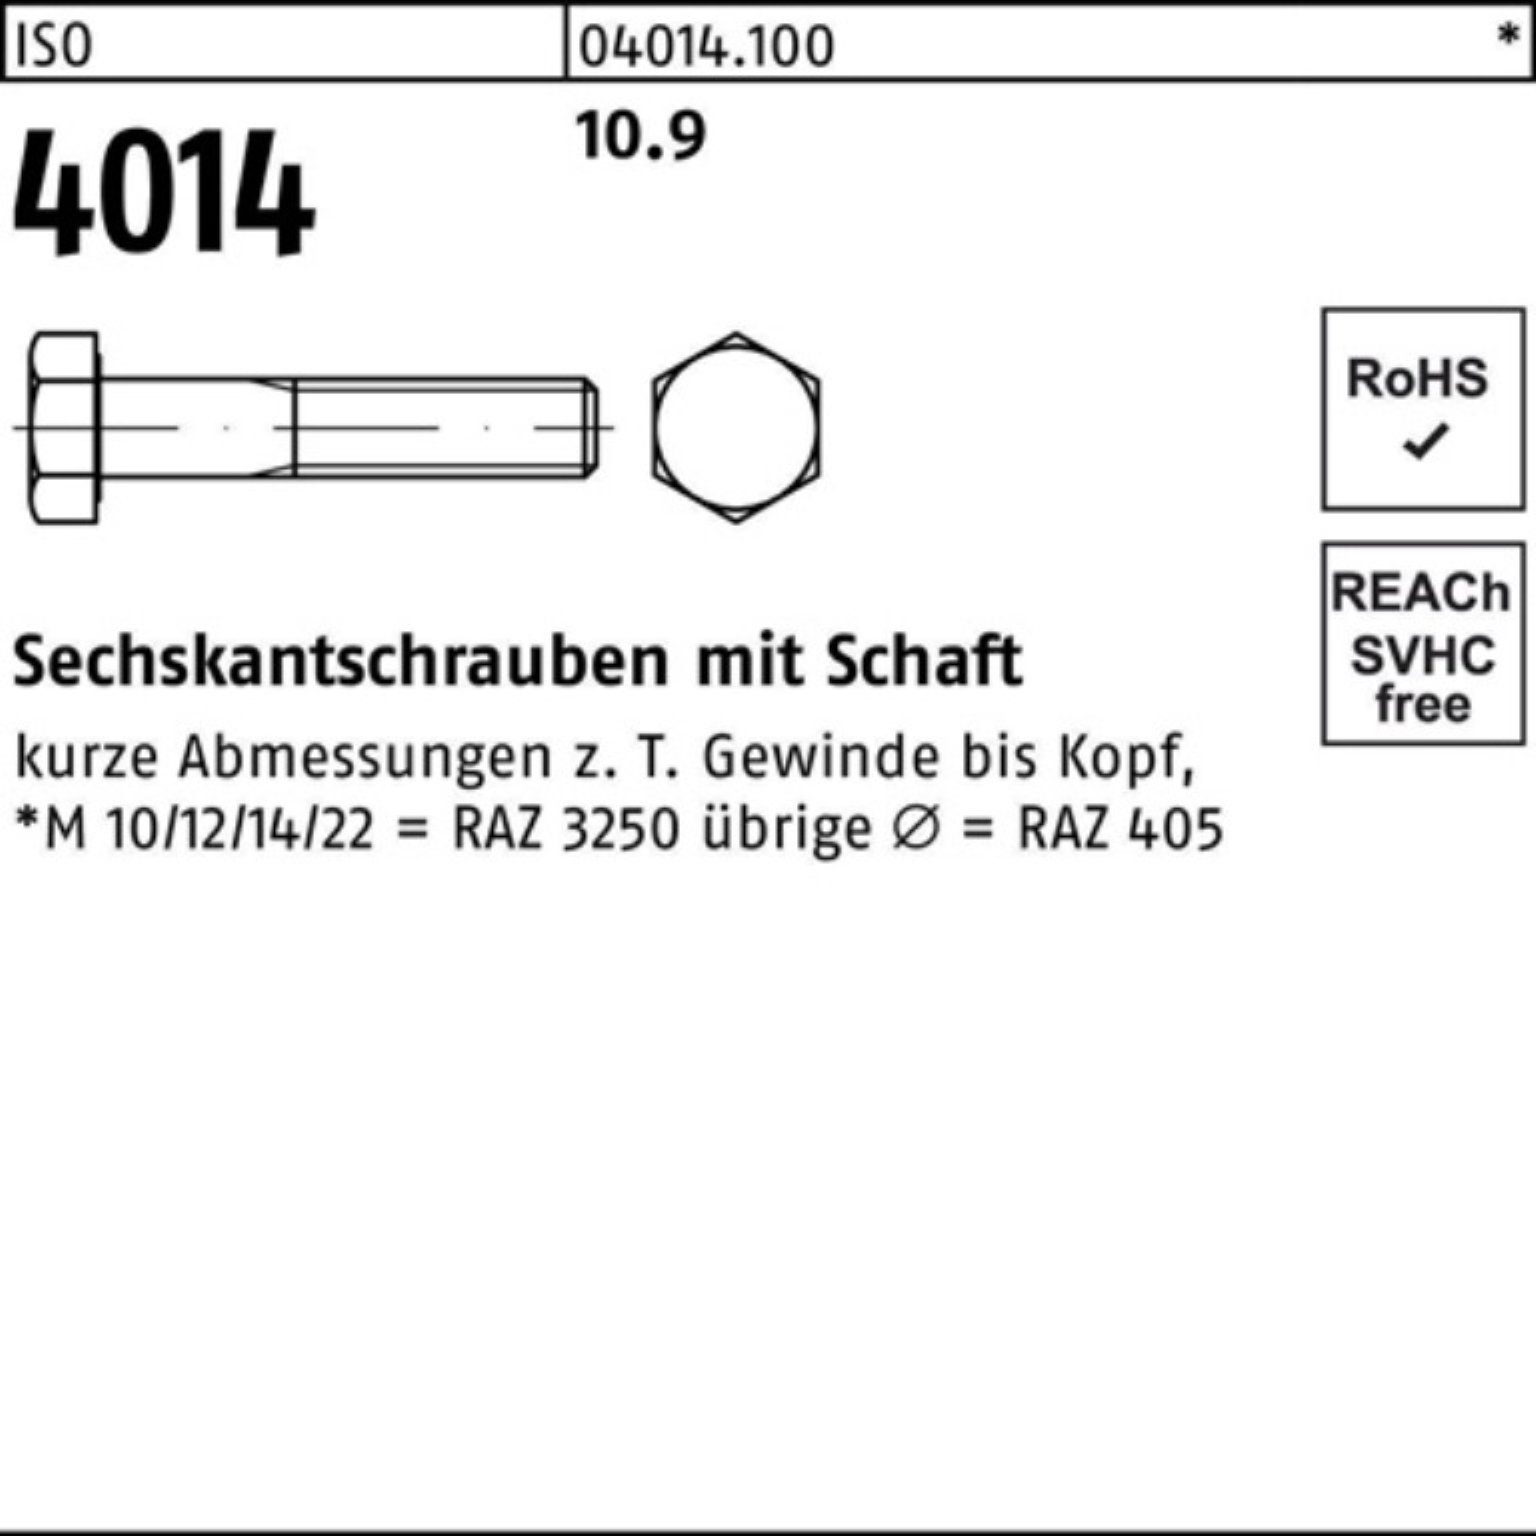 Bufab Sechskantschraube 4014 M24x 10.9 Sechskantschraube 100er 400 Schaft IS 1 ISO Pack Stück